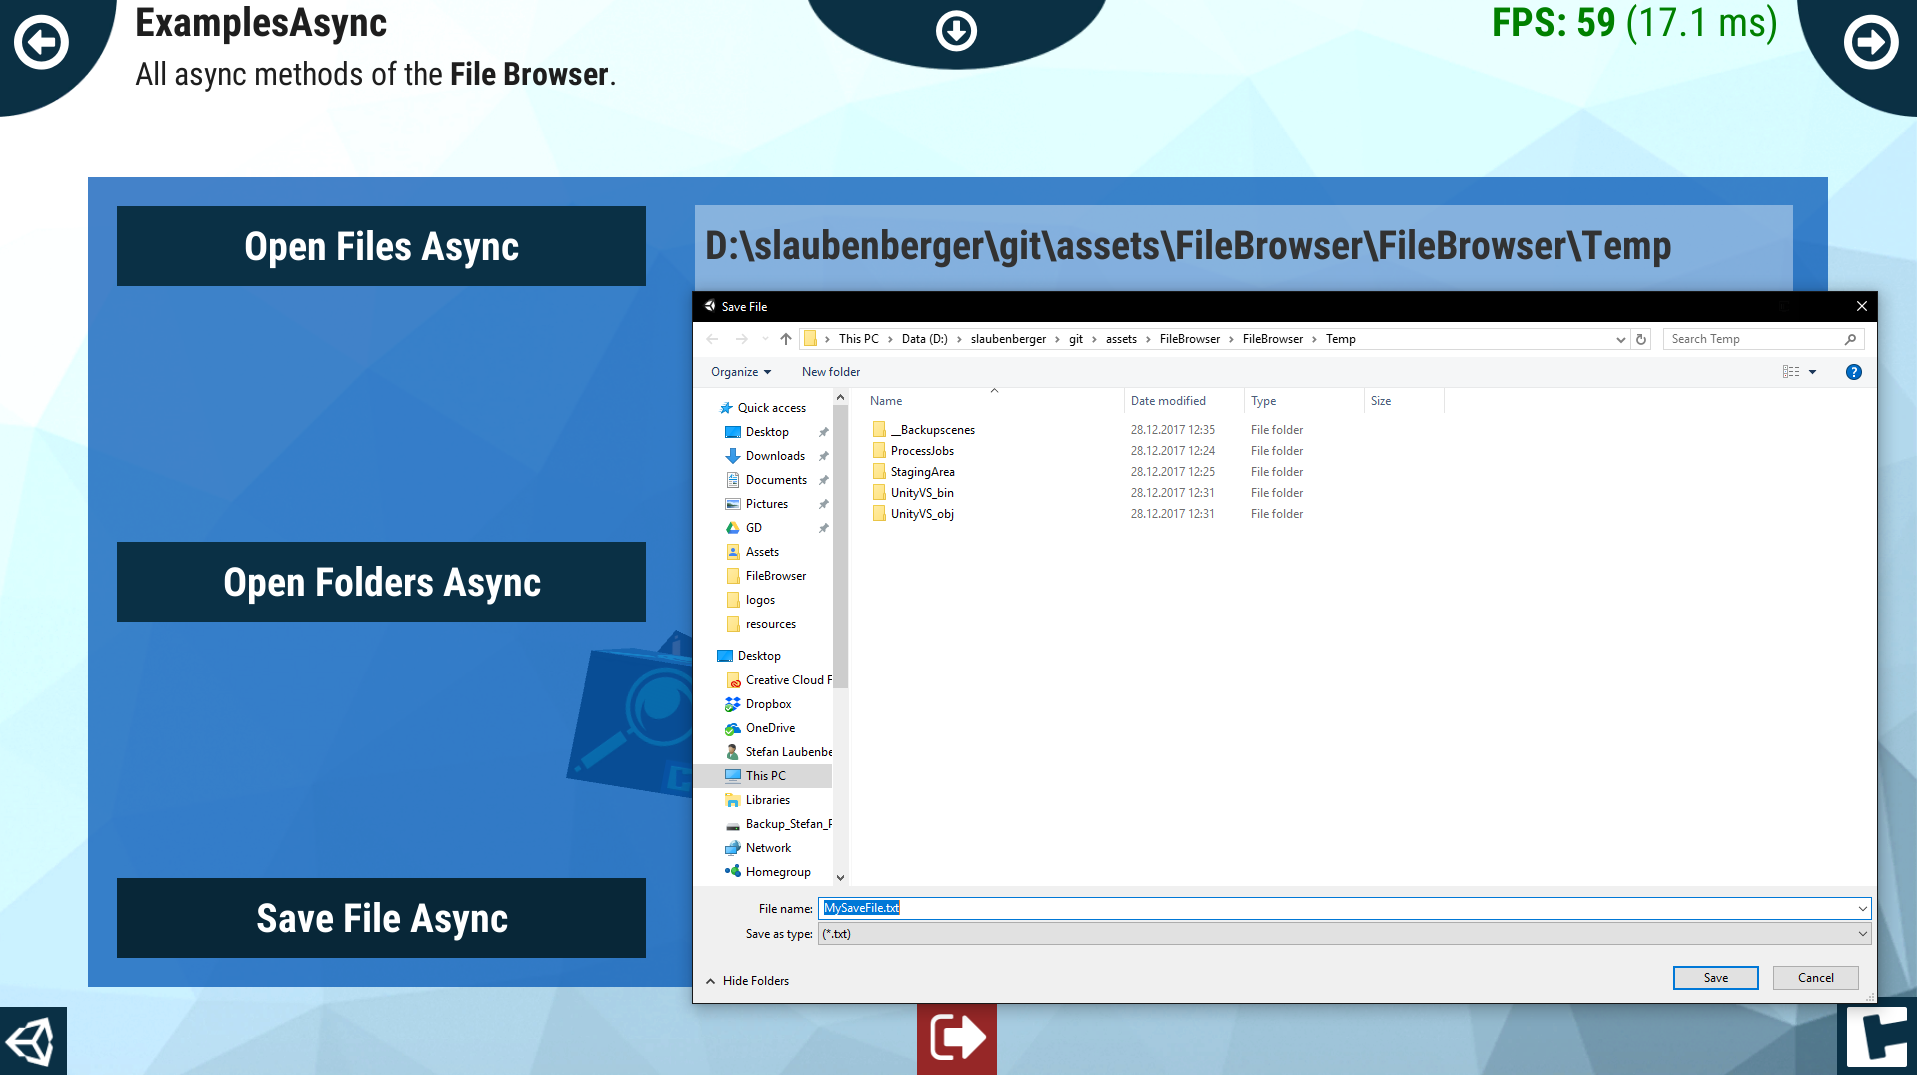 data/assets/FileBrowser/images/slider/07-savefile.PNG